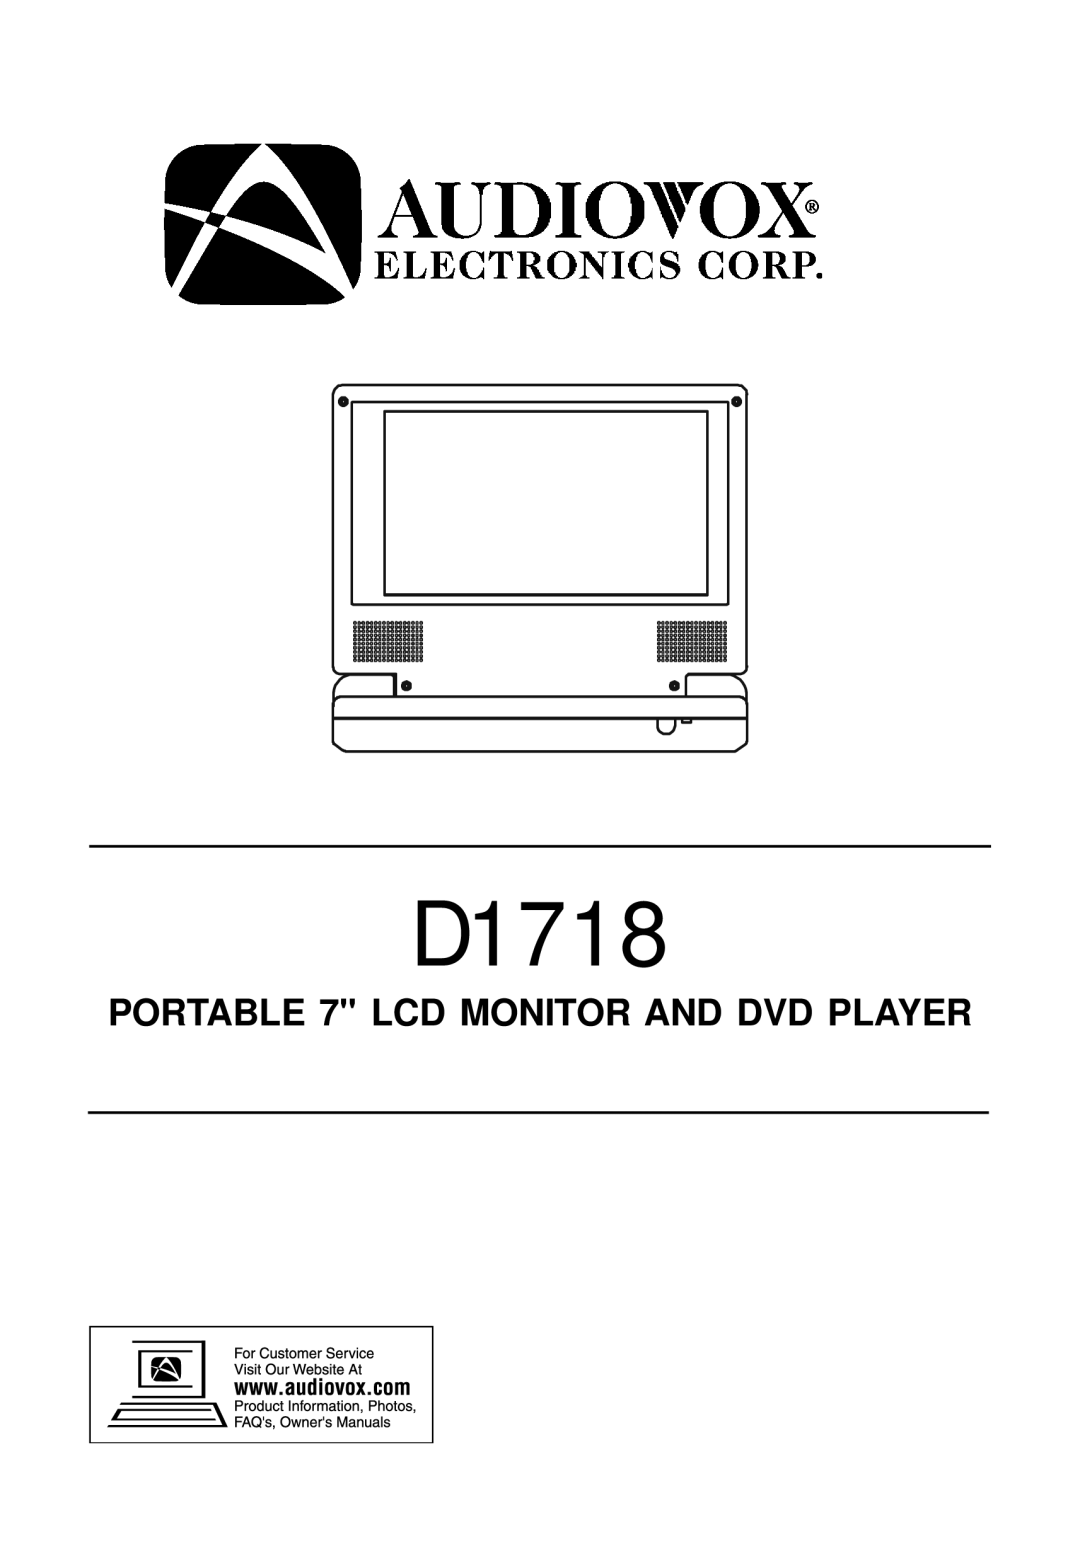 Audiovox D1718 manual 